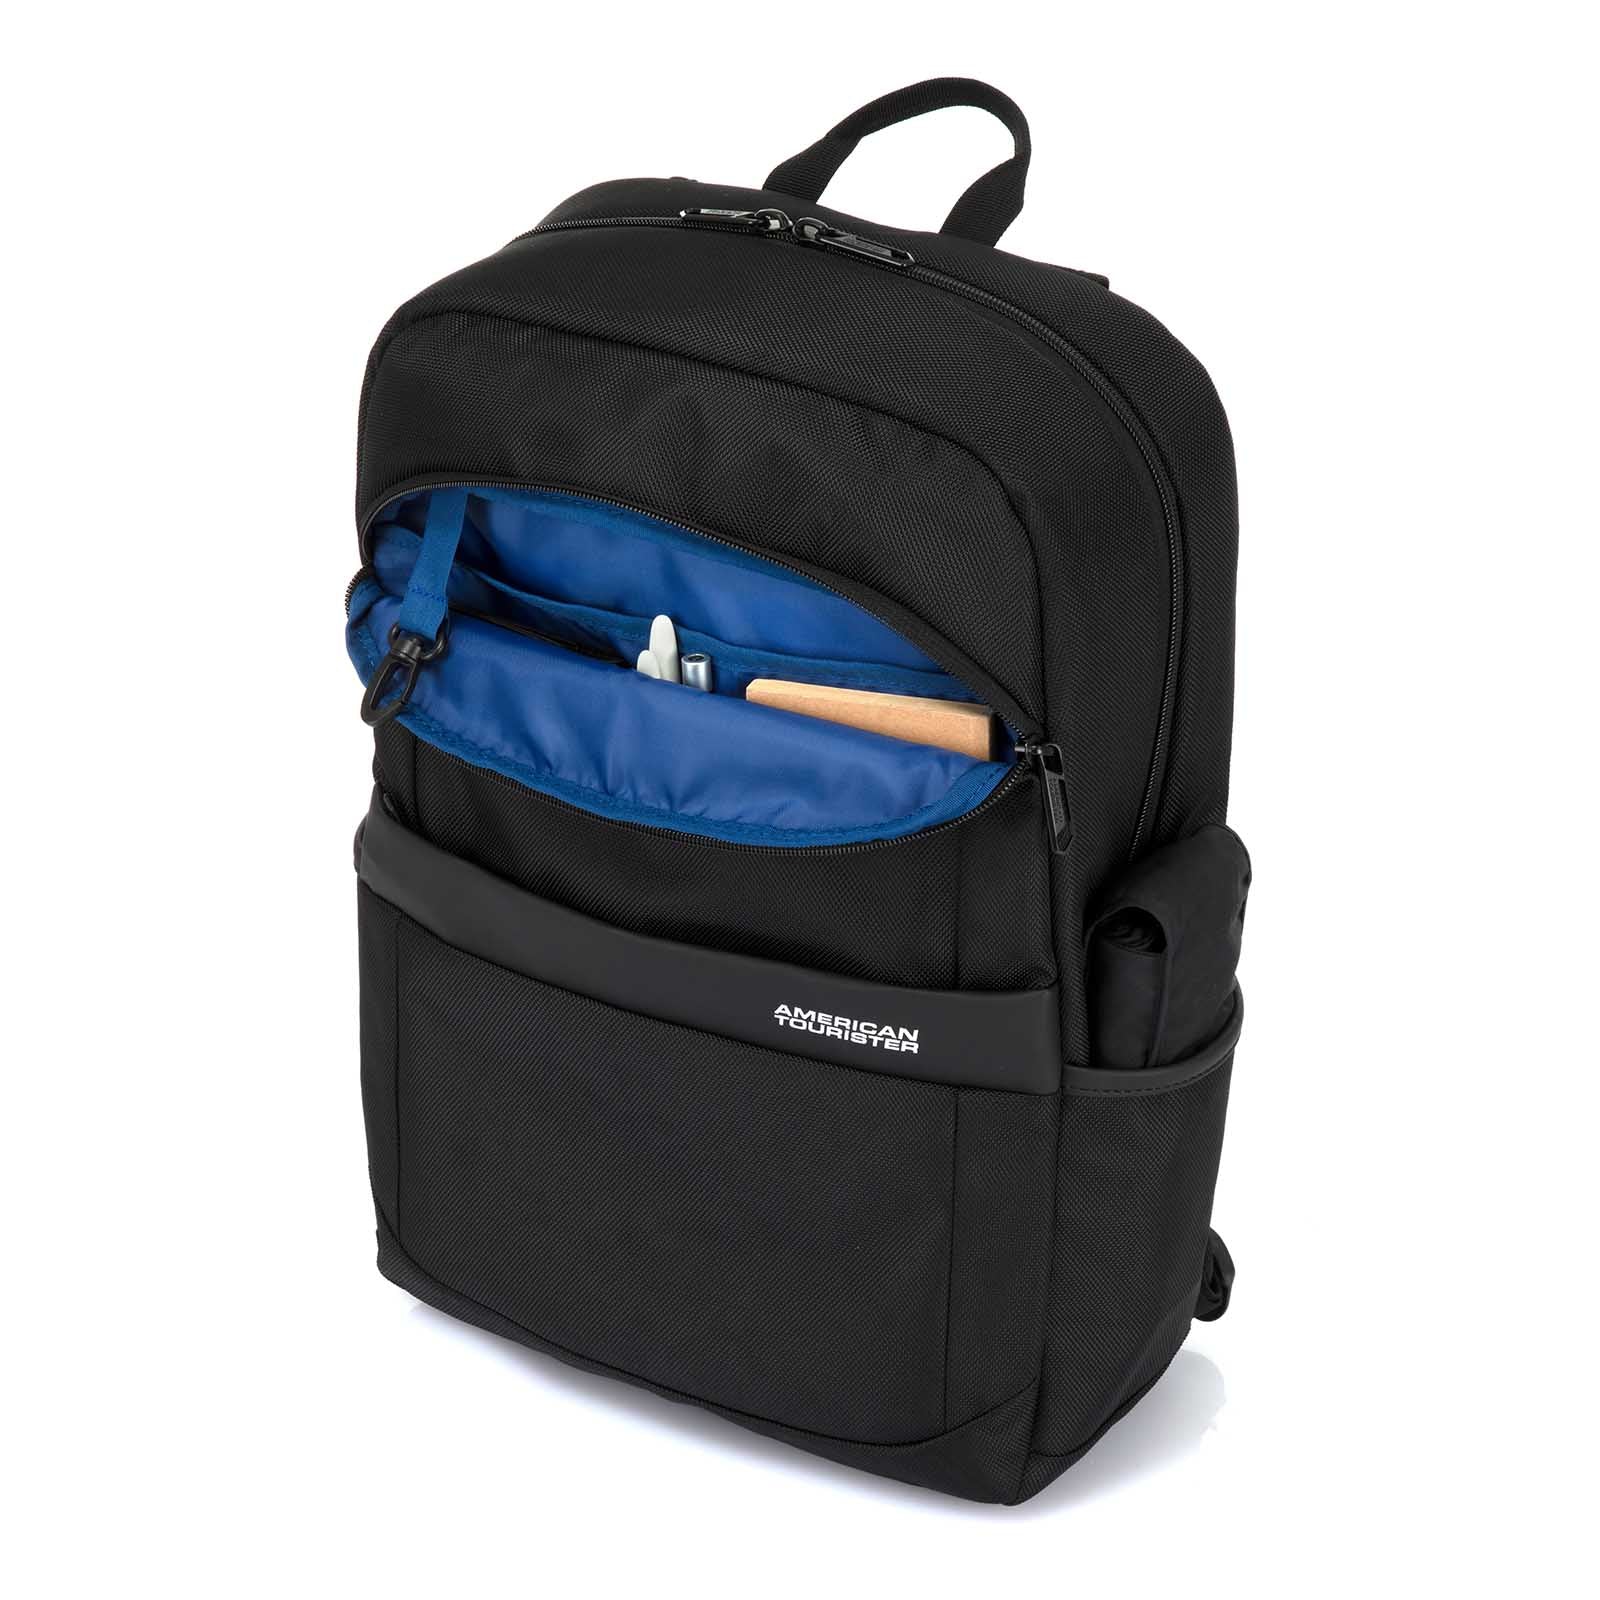 American-Tourister-Kamden-15-Inch-Laptop-Backpack-Black-Pocket